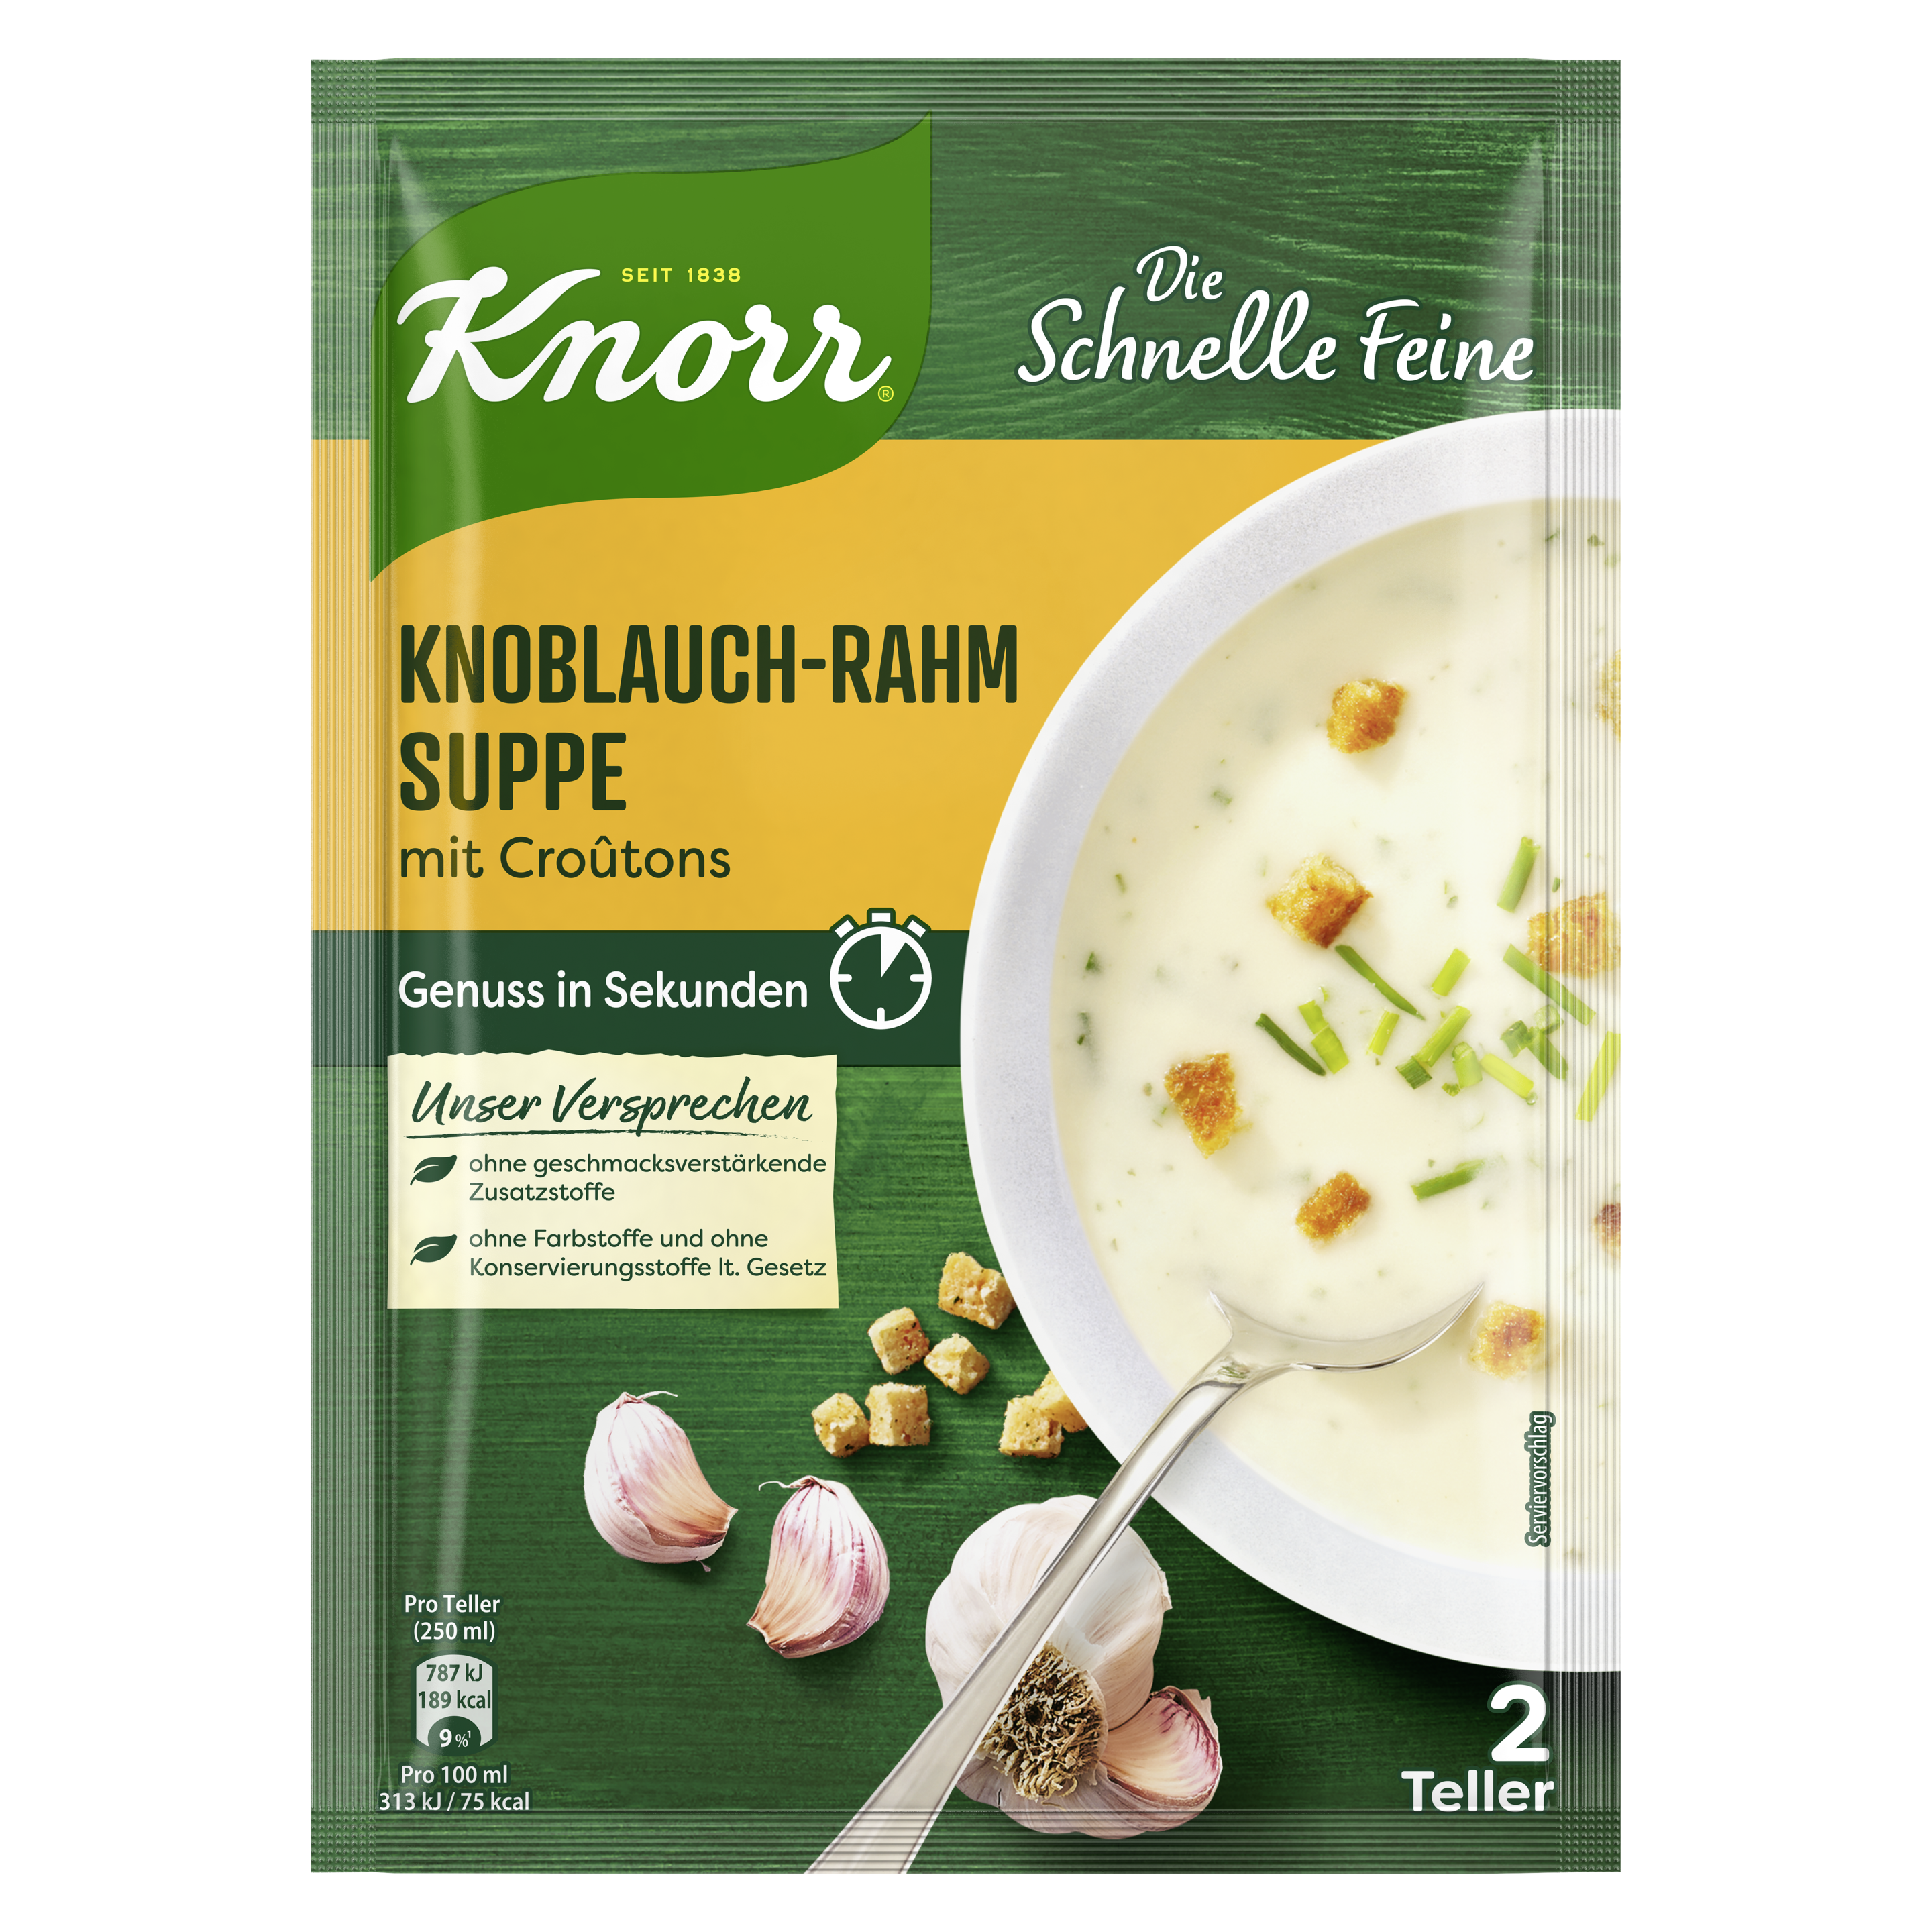 Knorr Die Schnelle Feine Knoblauch-Rahm Suppe 2 Teller